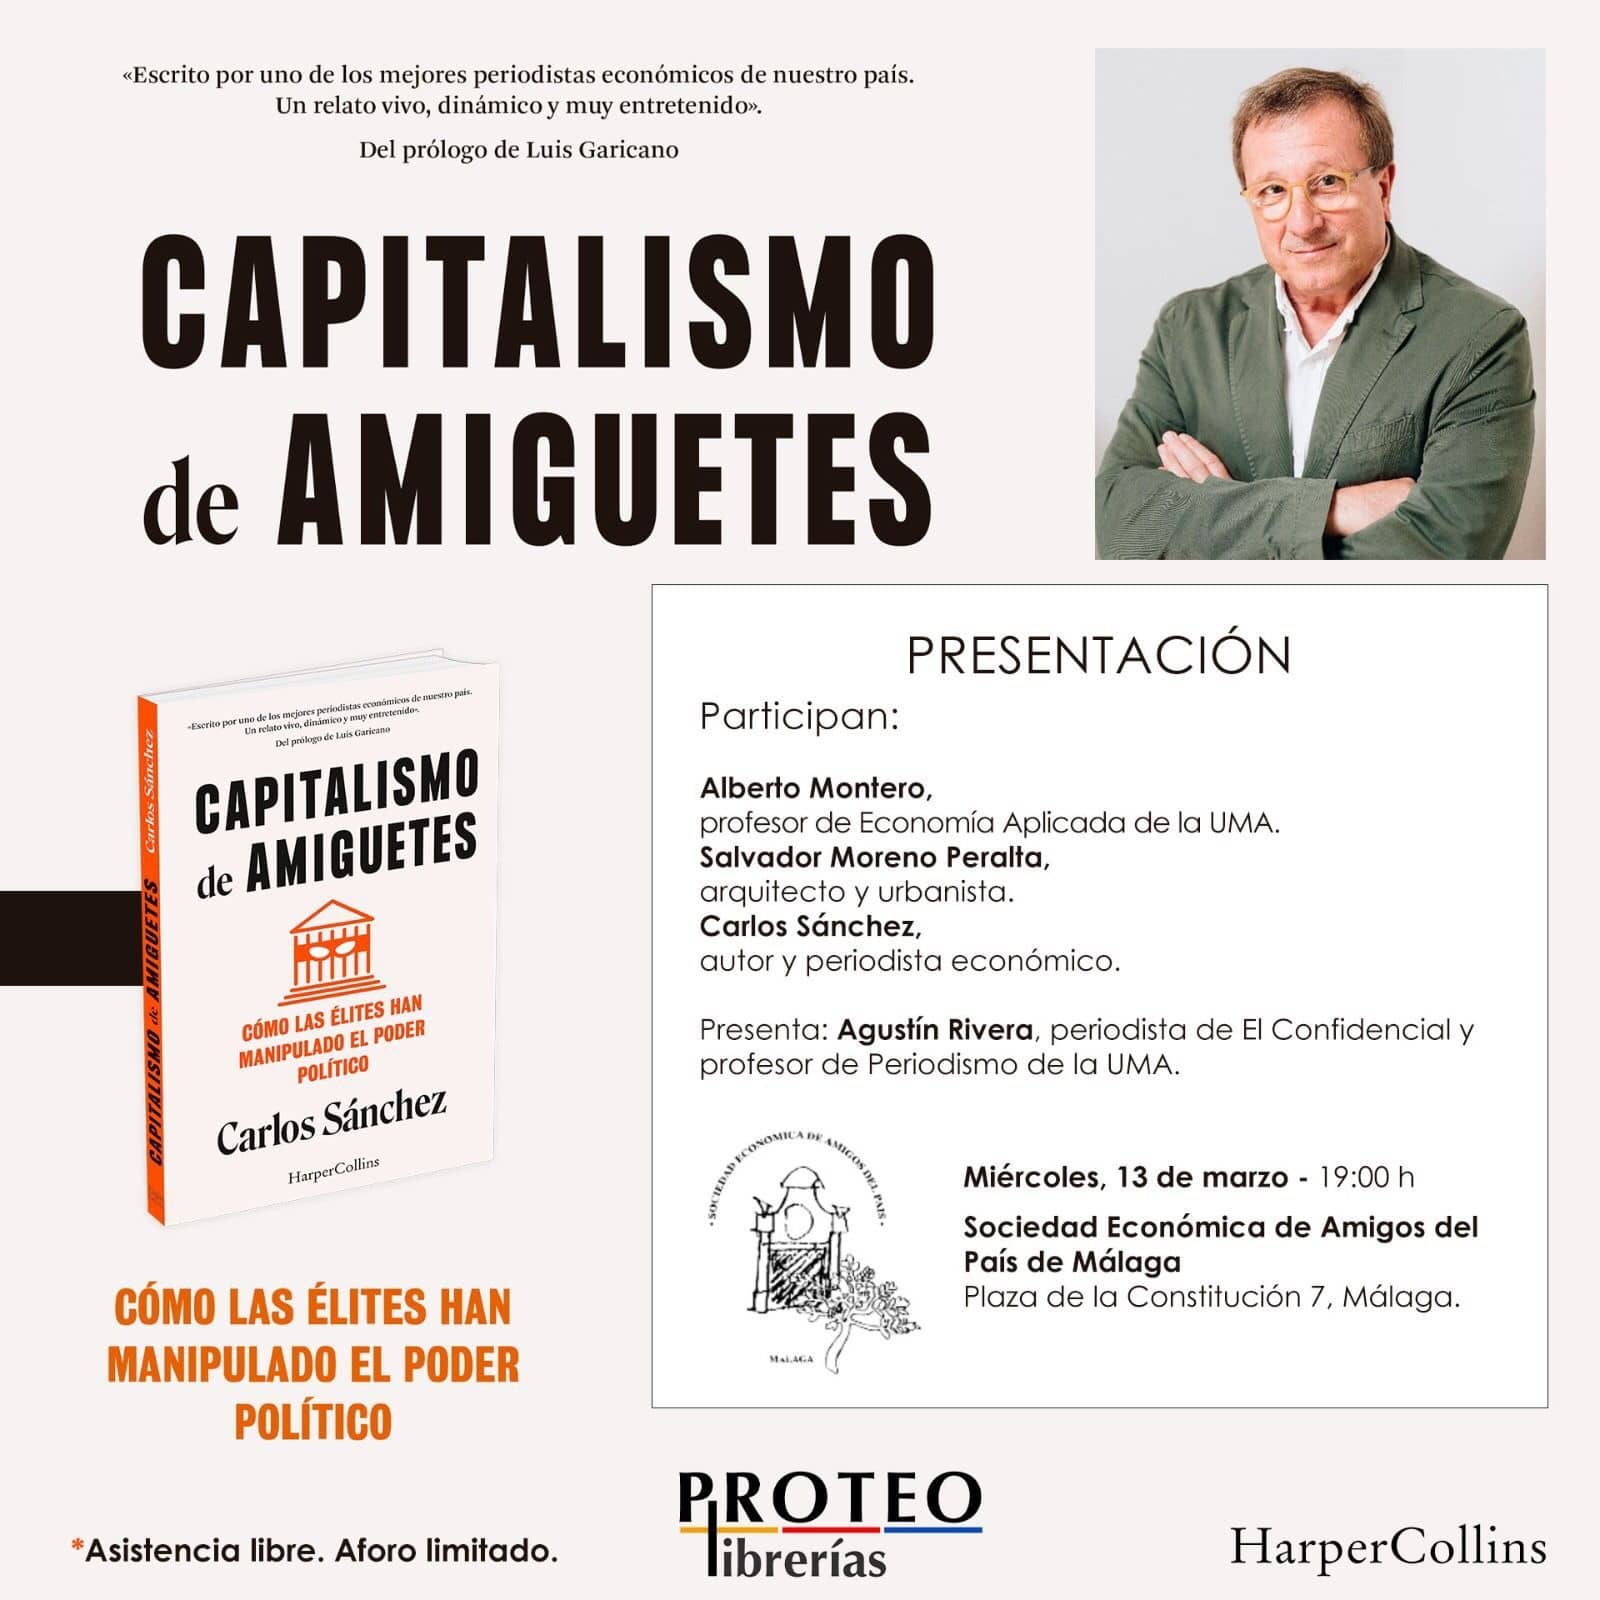 Capitalismo de amiguetes. Cómo la élites han manipulado el poder. Presentación del libro de Carlos Sánchez.